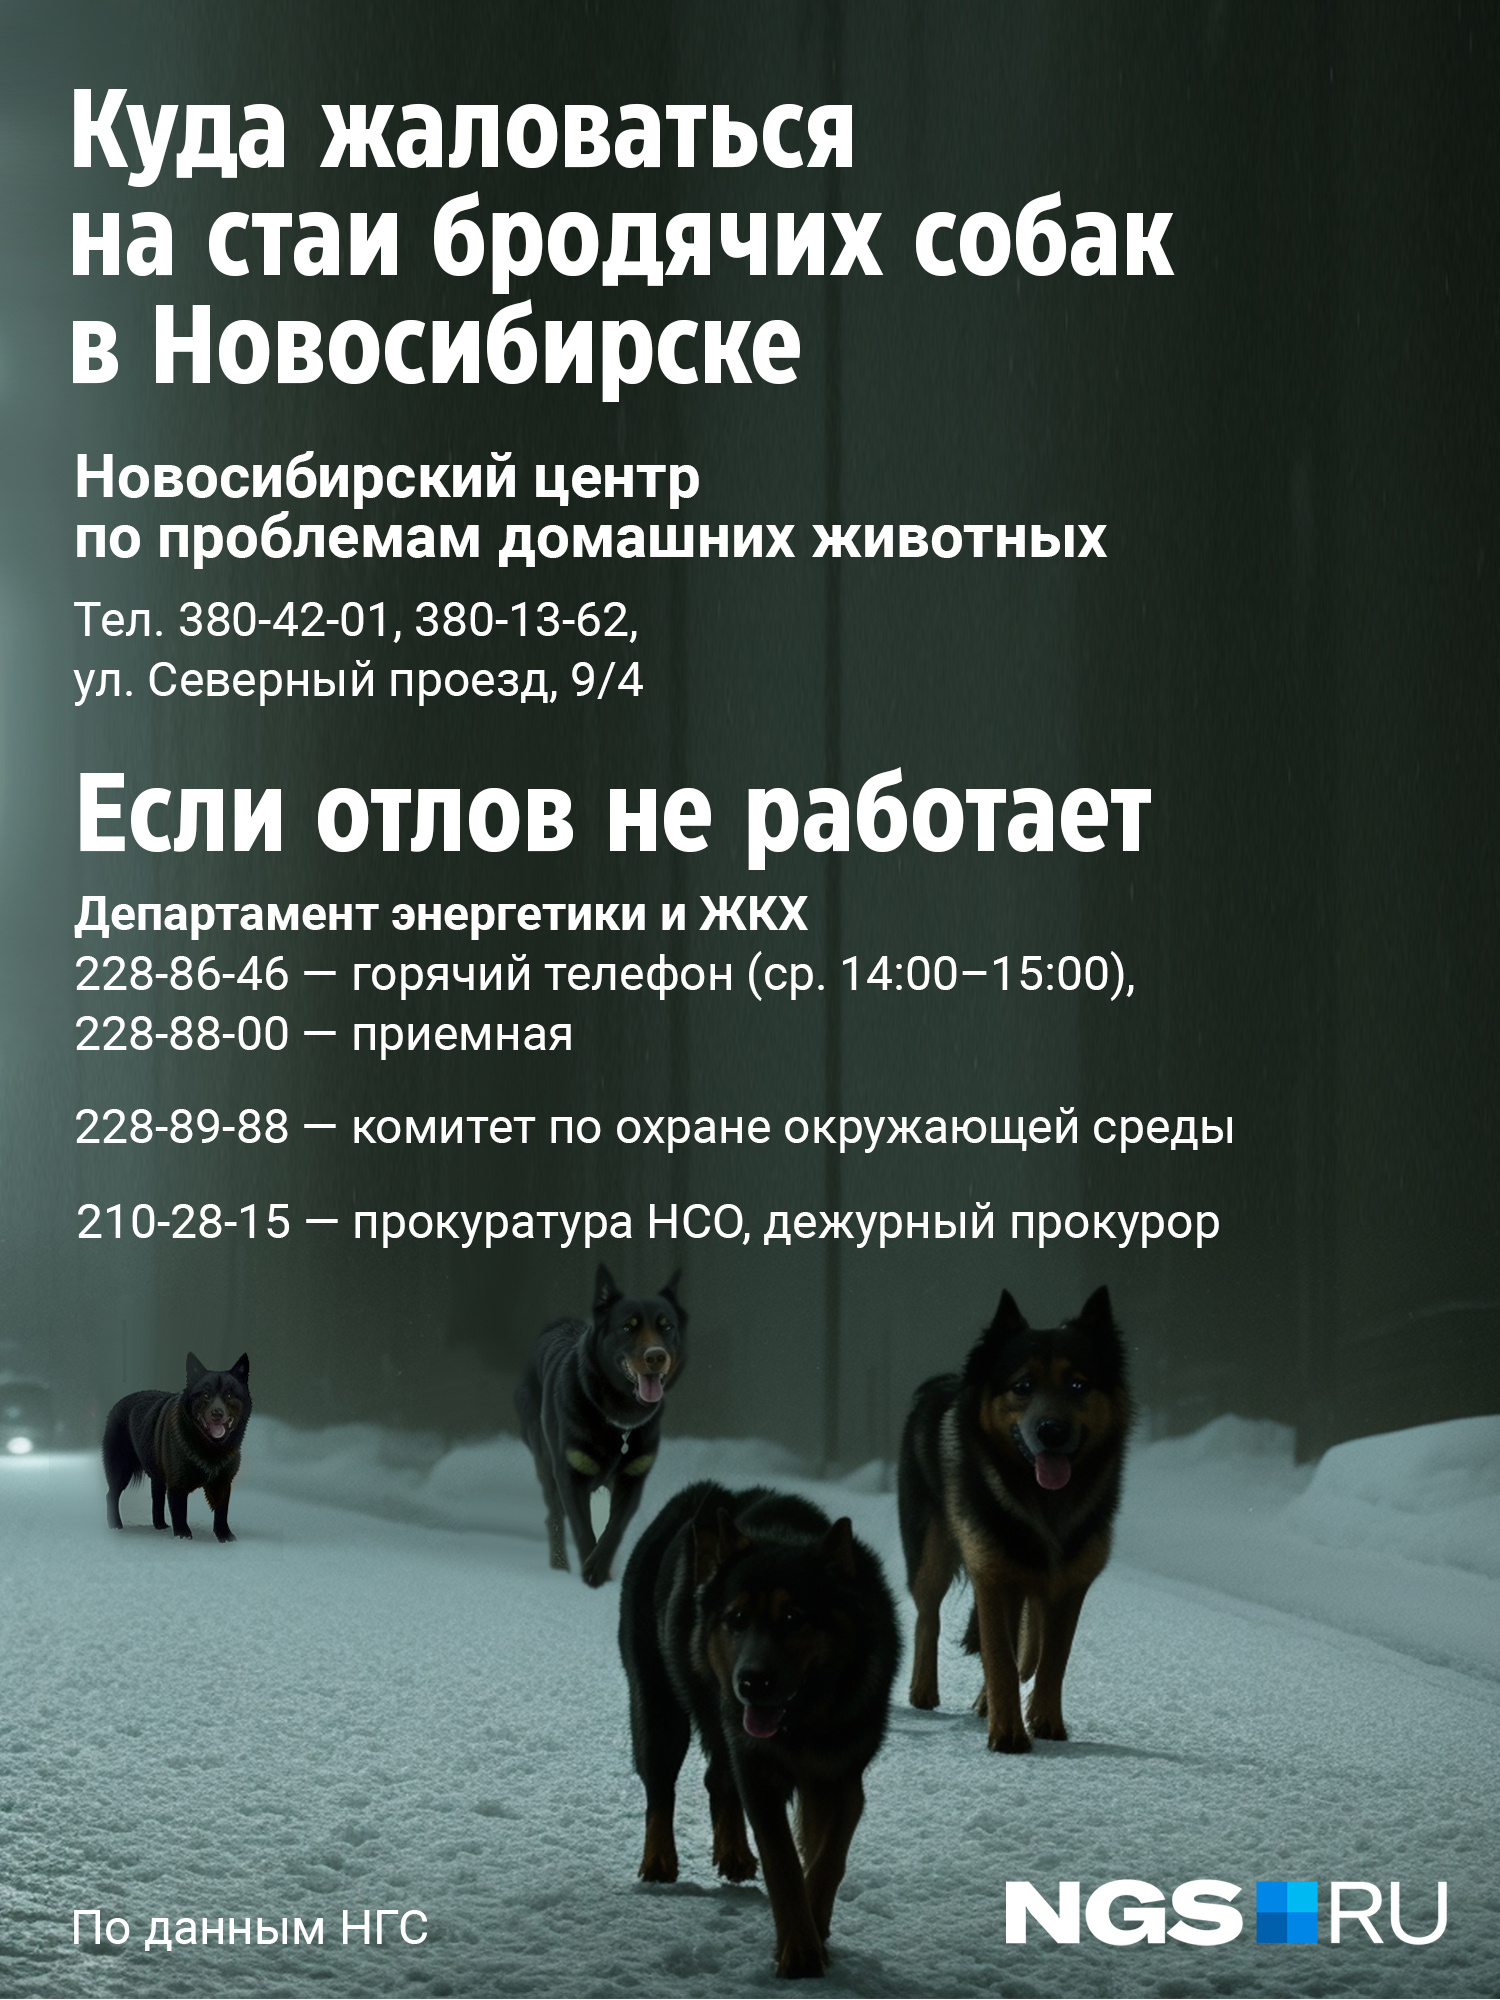 Куда пожаловаться на стаю бродячих собак в Новосибирске: что делать, если  агрессивные псы во дворе, телефон отлова - 28 февраля 2023 - НГС.ру